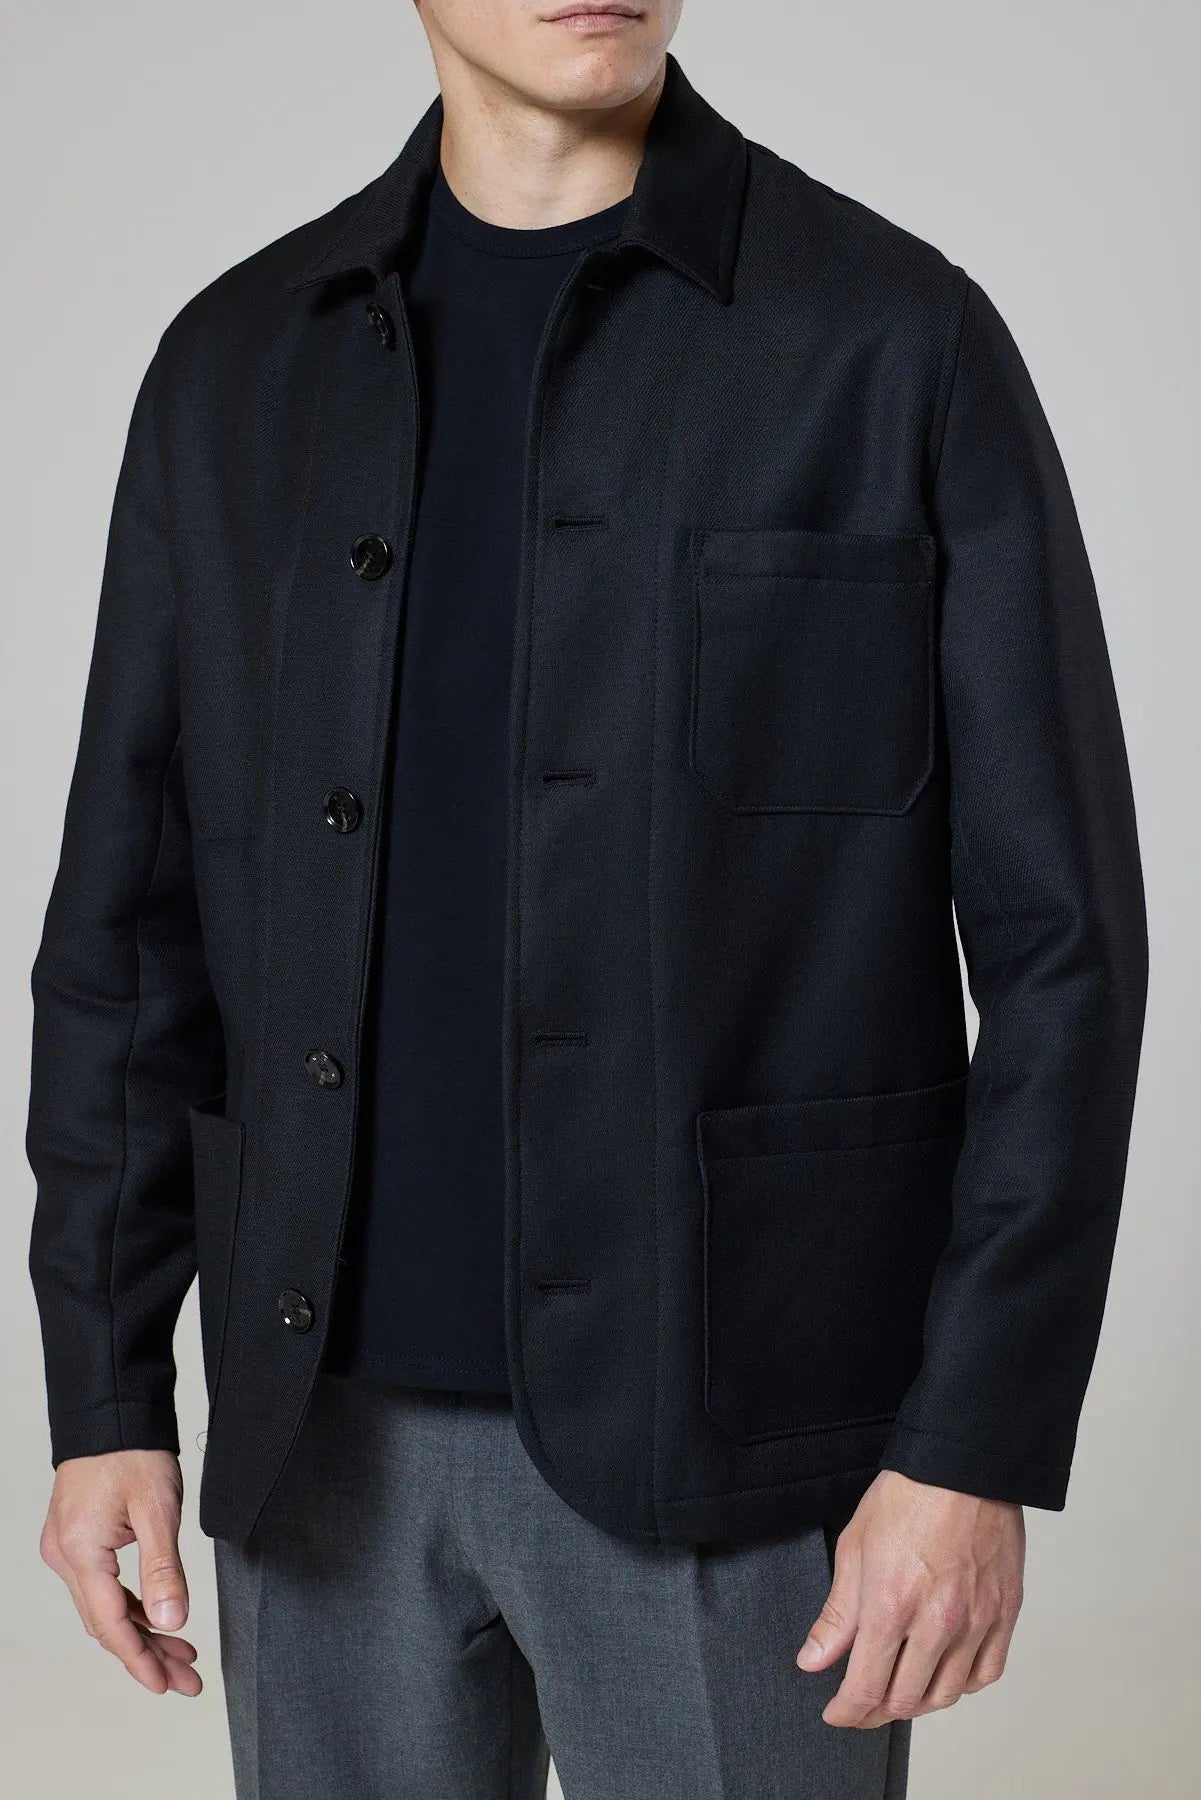 Billingham Jacket - Black Twill - Wear London